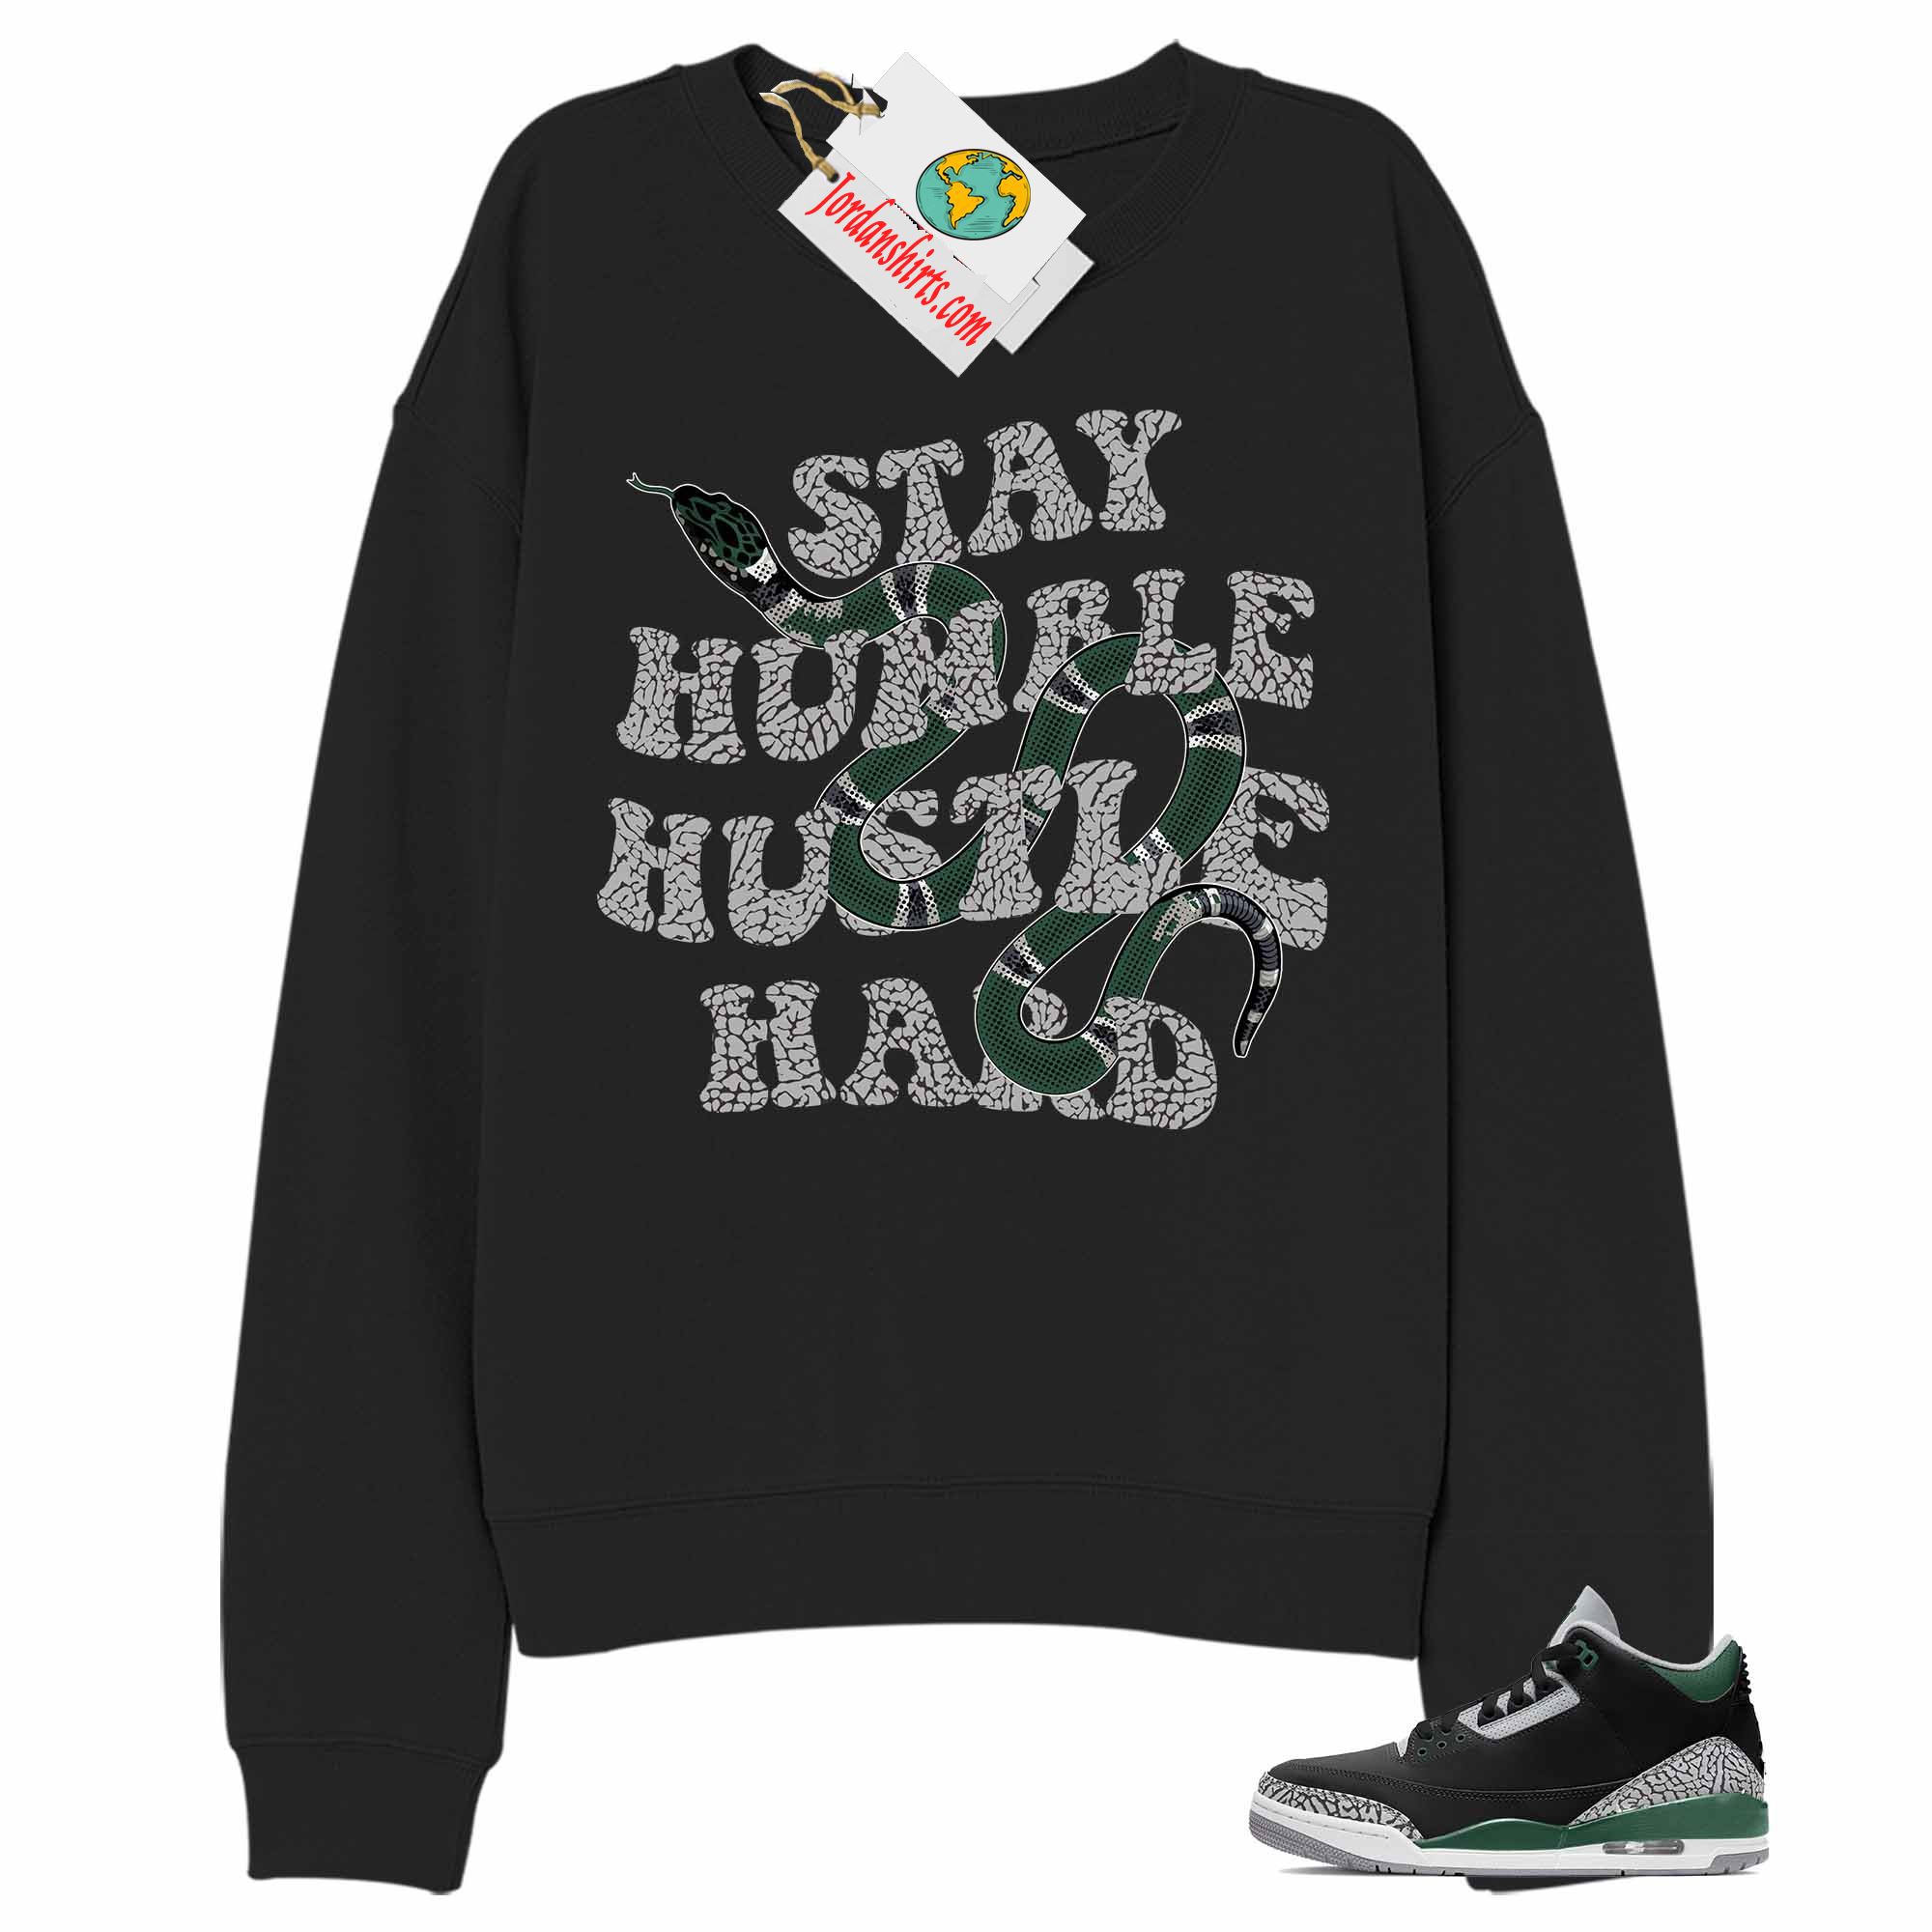 Jordan 3 Sweatshirt, Stay Humble Hustle Hard King Snake Black Sweatshirt Air Jordan 3 Pine Green 3s Plus Size Up To 5xl